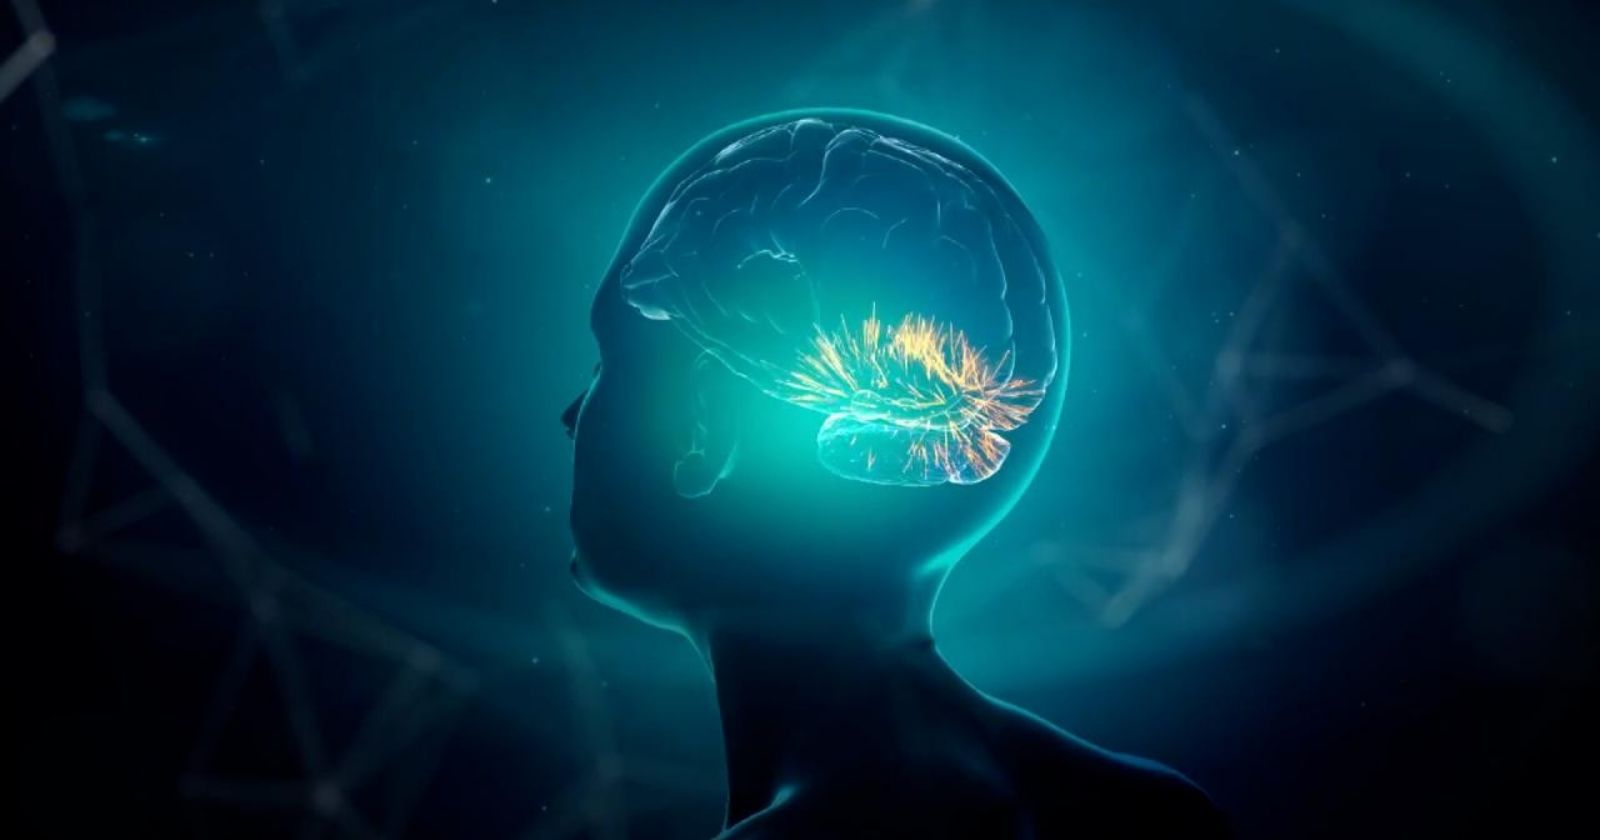 Bu beyin implantı sayesinde yalnızca düşünerek iletişim kurabiliyorsunuz!